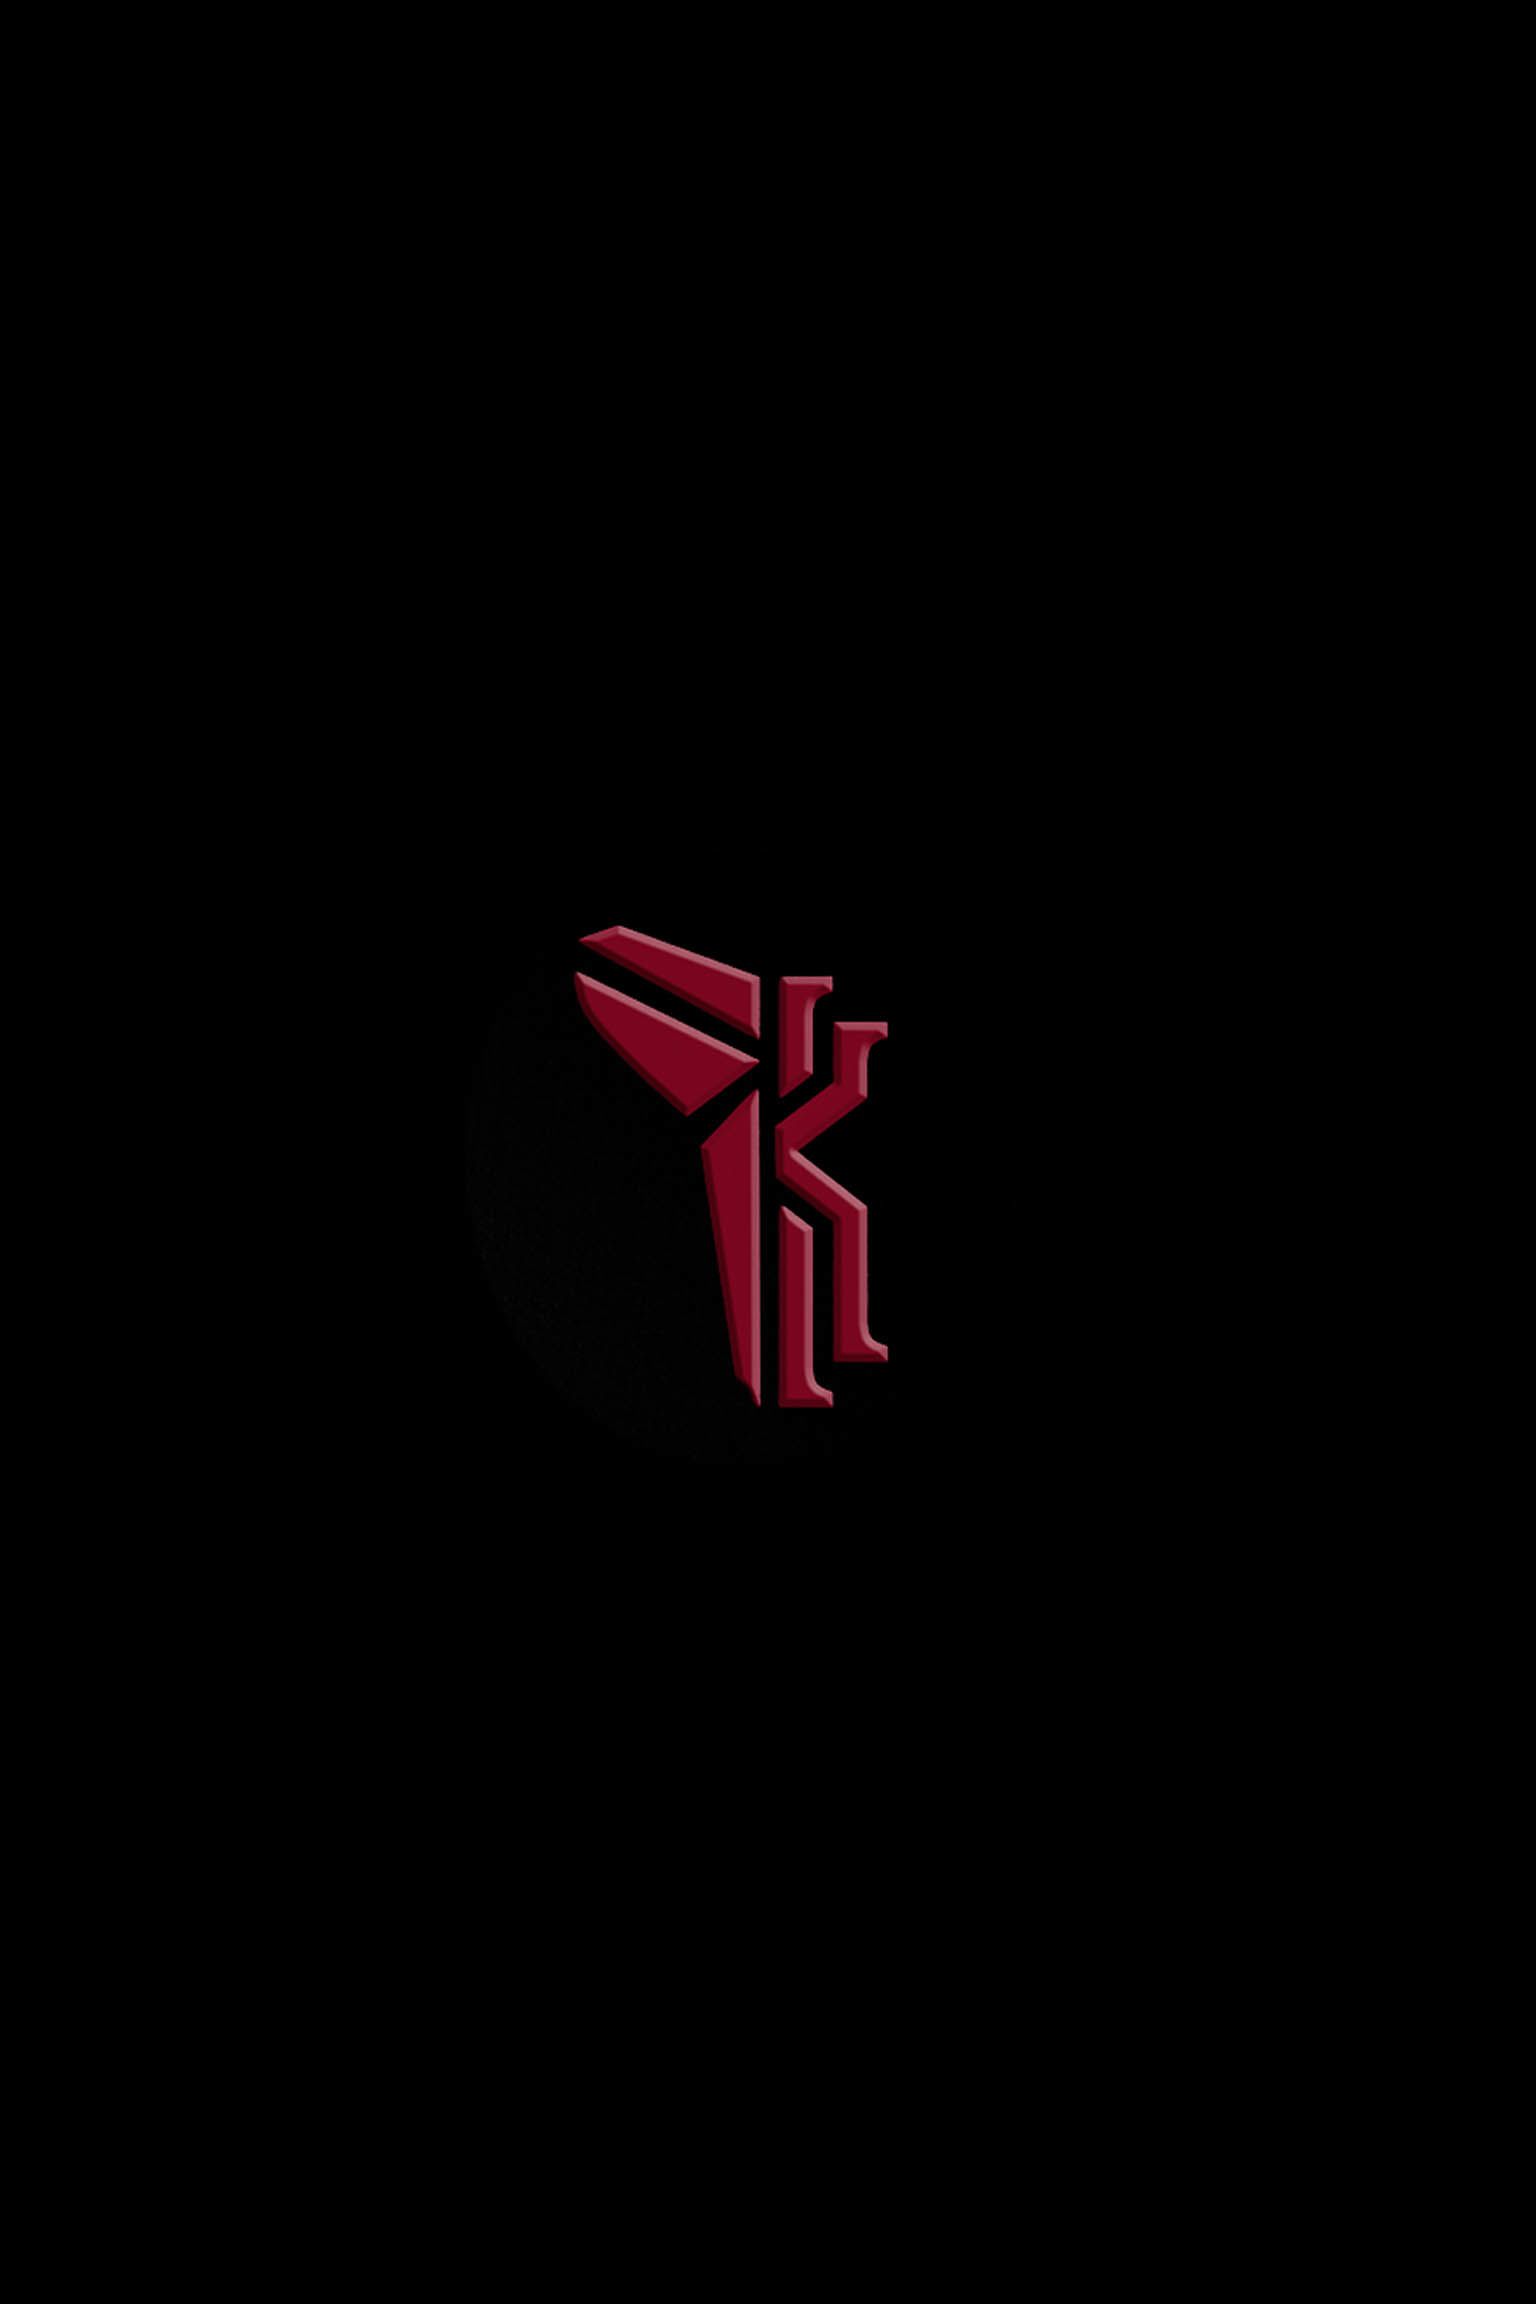 kyrie x kobe logo